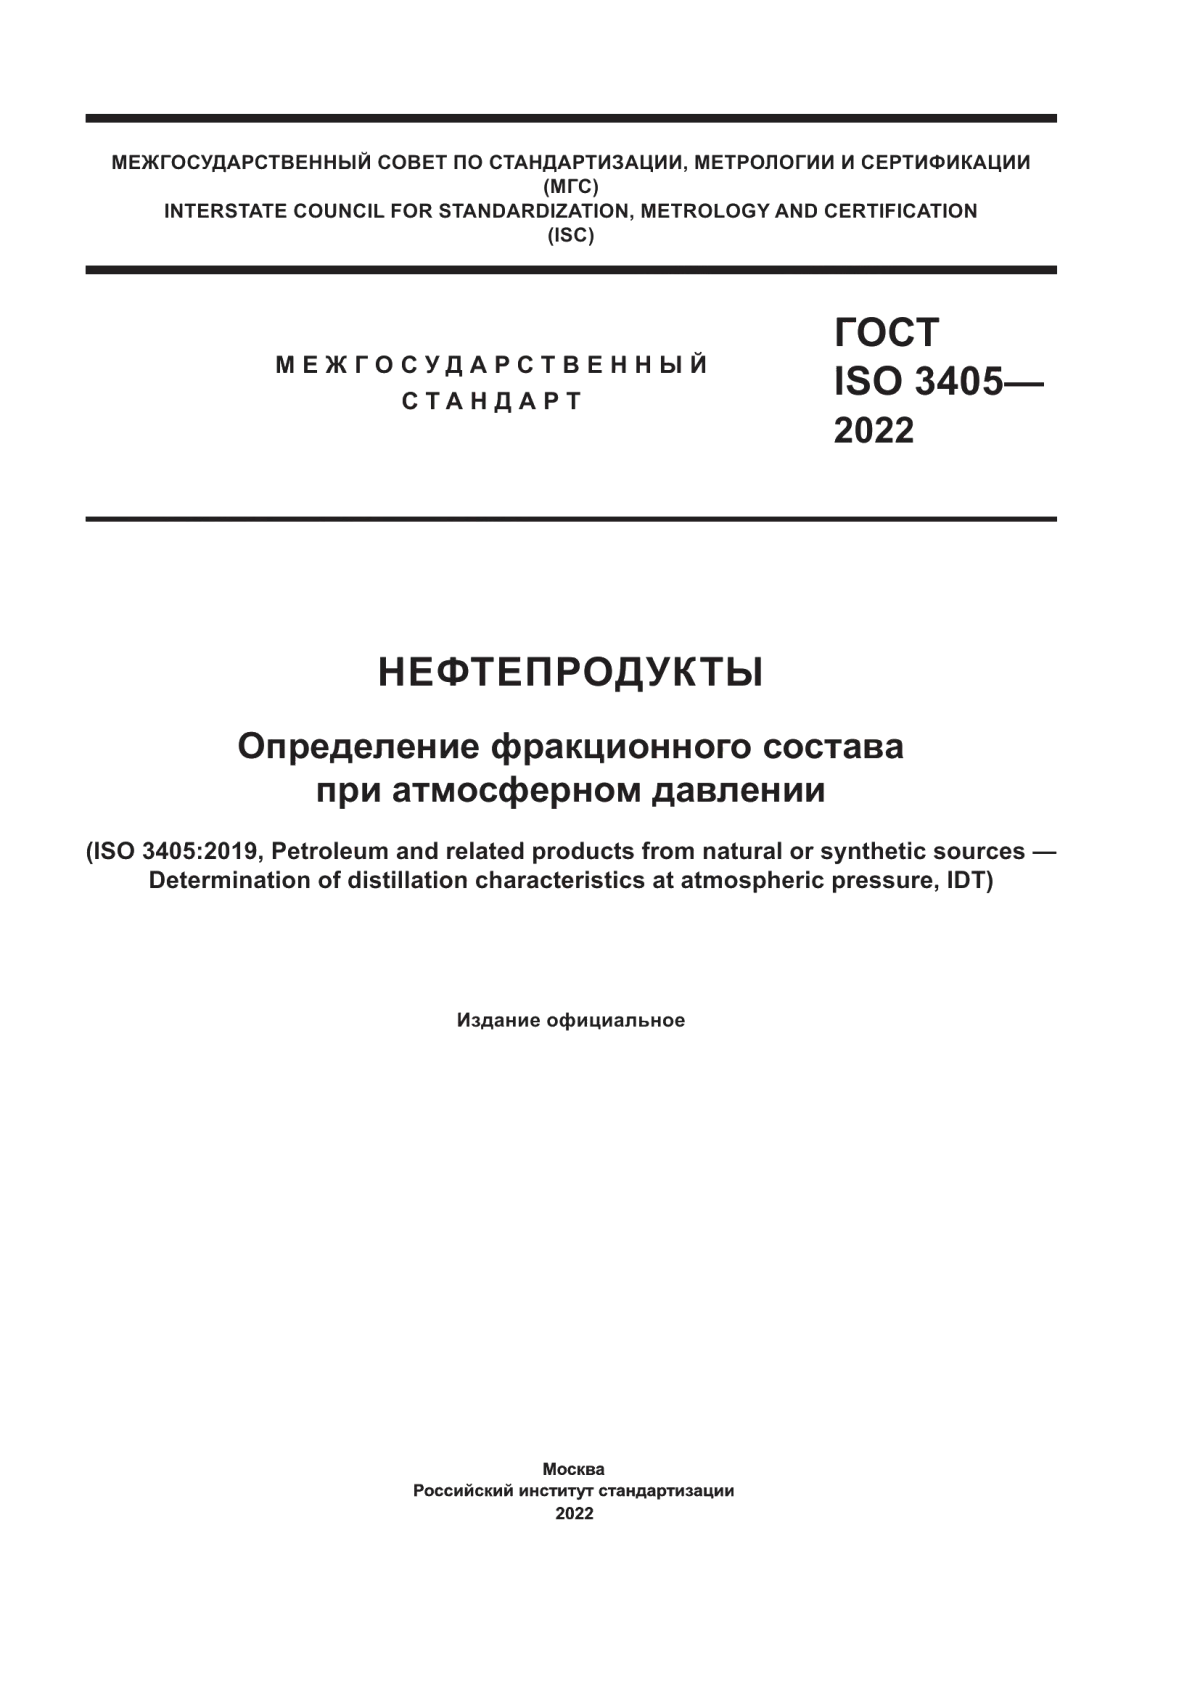 ГОСТ ISO 3405-2022 Нефтепродукты. Определение фракционного состава при атмосферном давлении